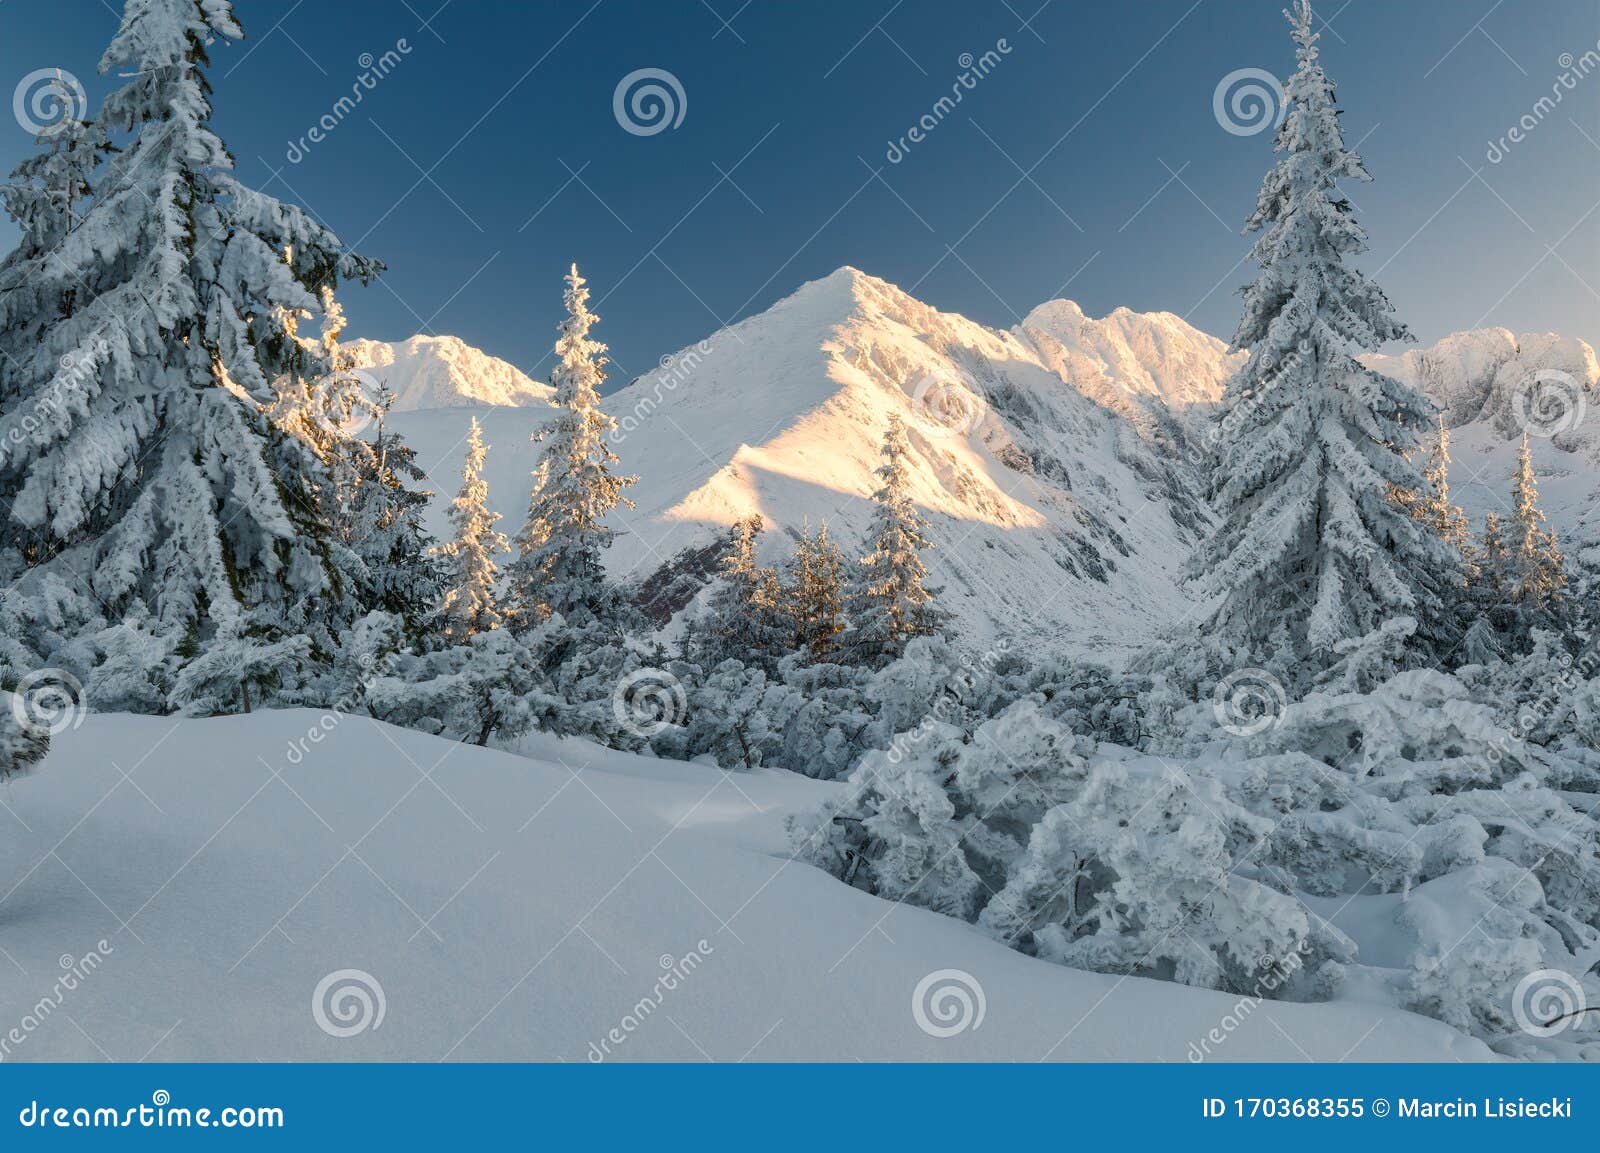 snowy pine trees, tatra mountains, poland